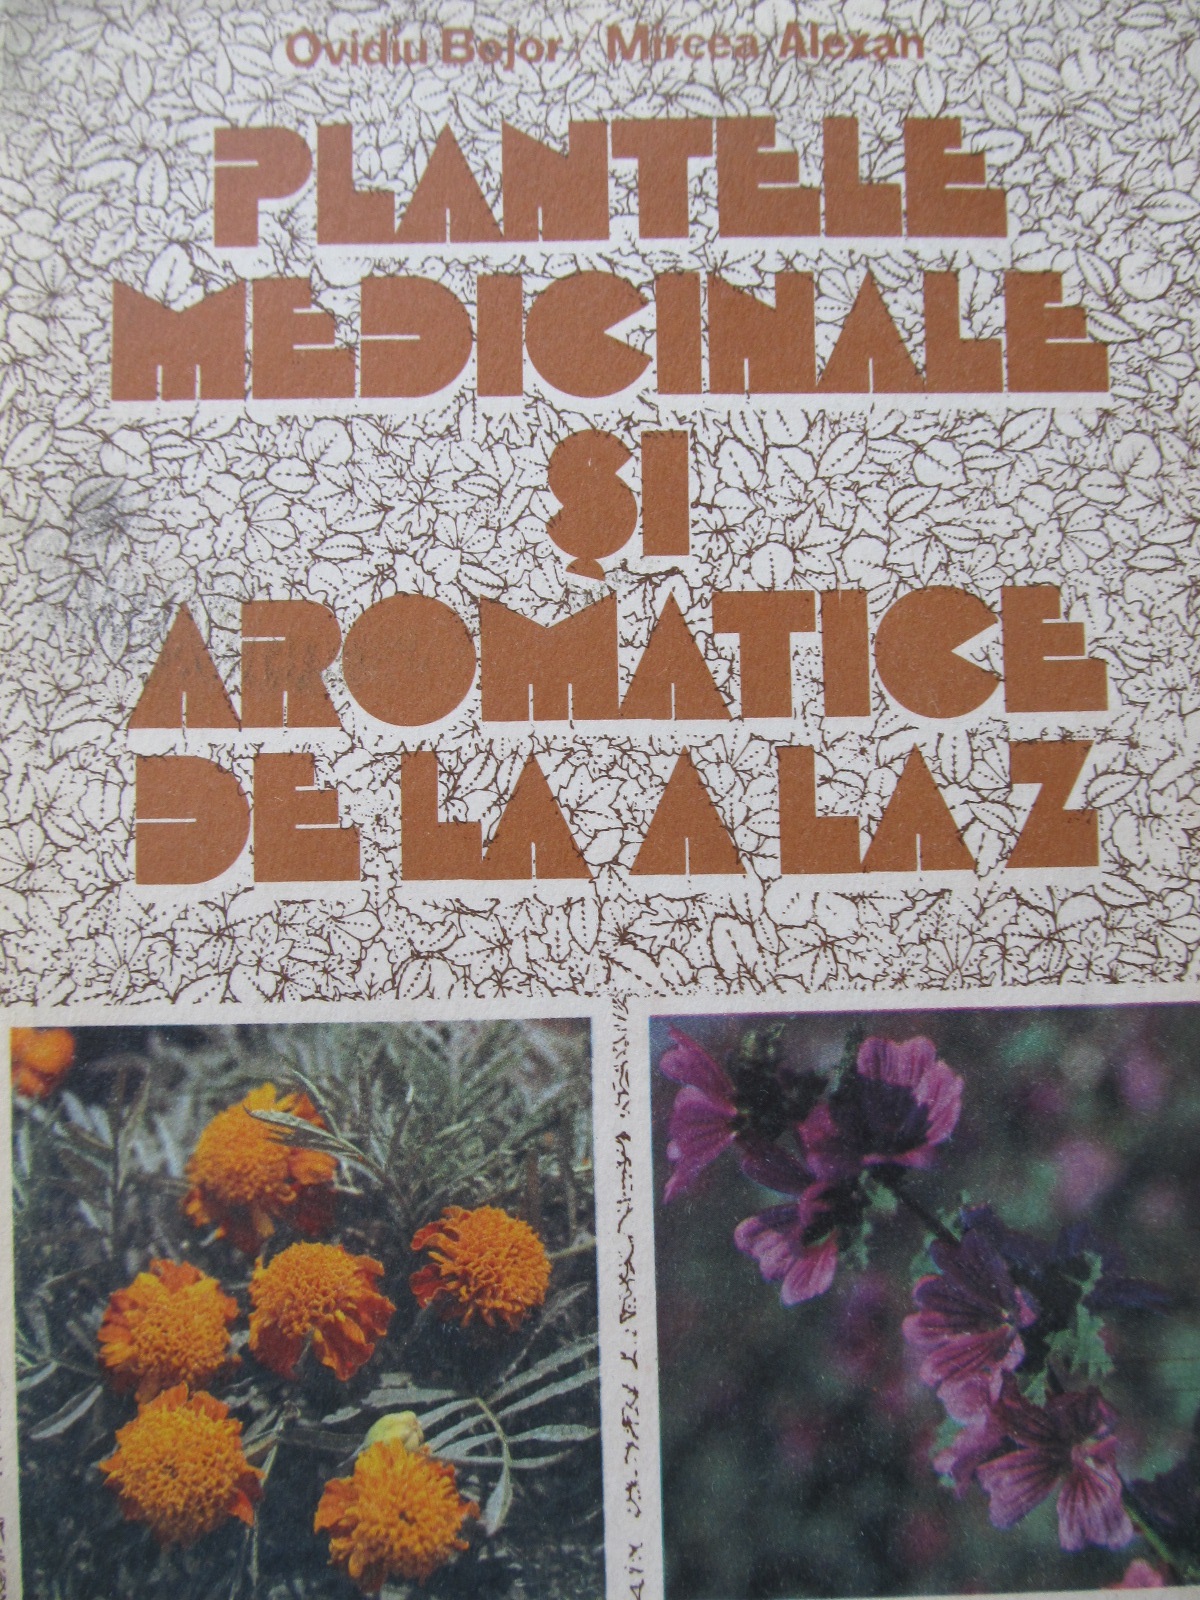 Carte Plantele medicinale si aromatice de la A la Z - Ovidiu Bojor , Mircea Alexan